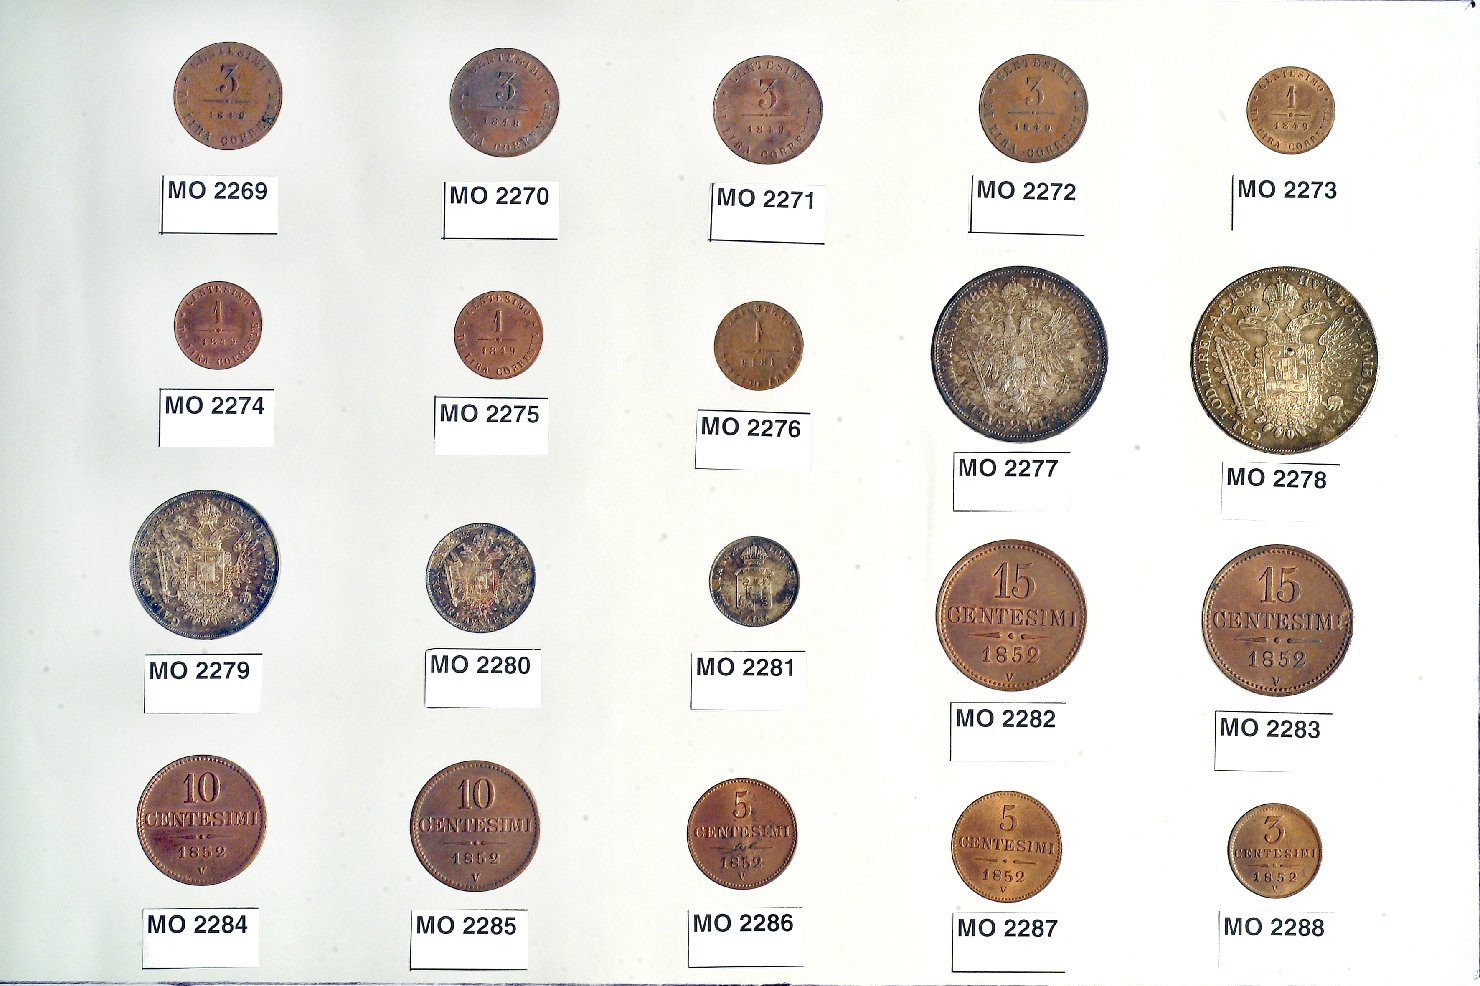 moneta - 1 centesimo - bottega veneta (sec. XIX d.C)